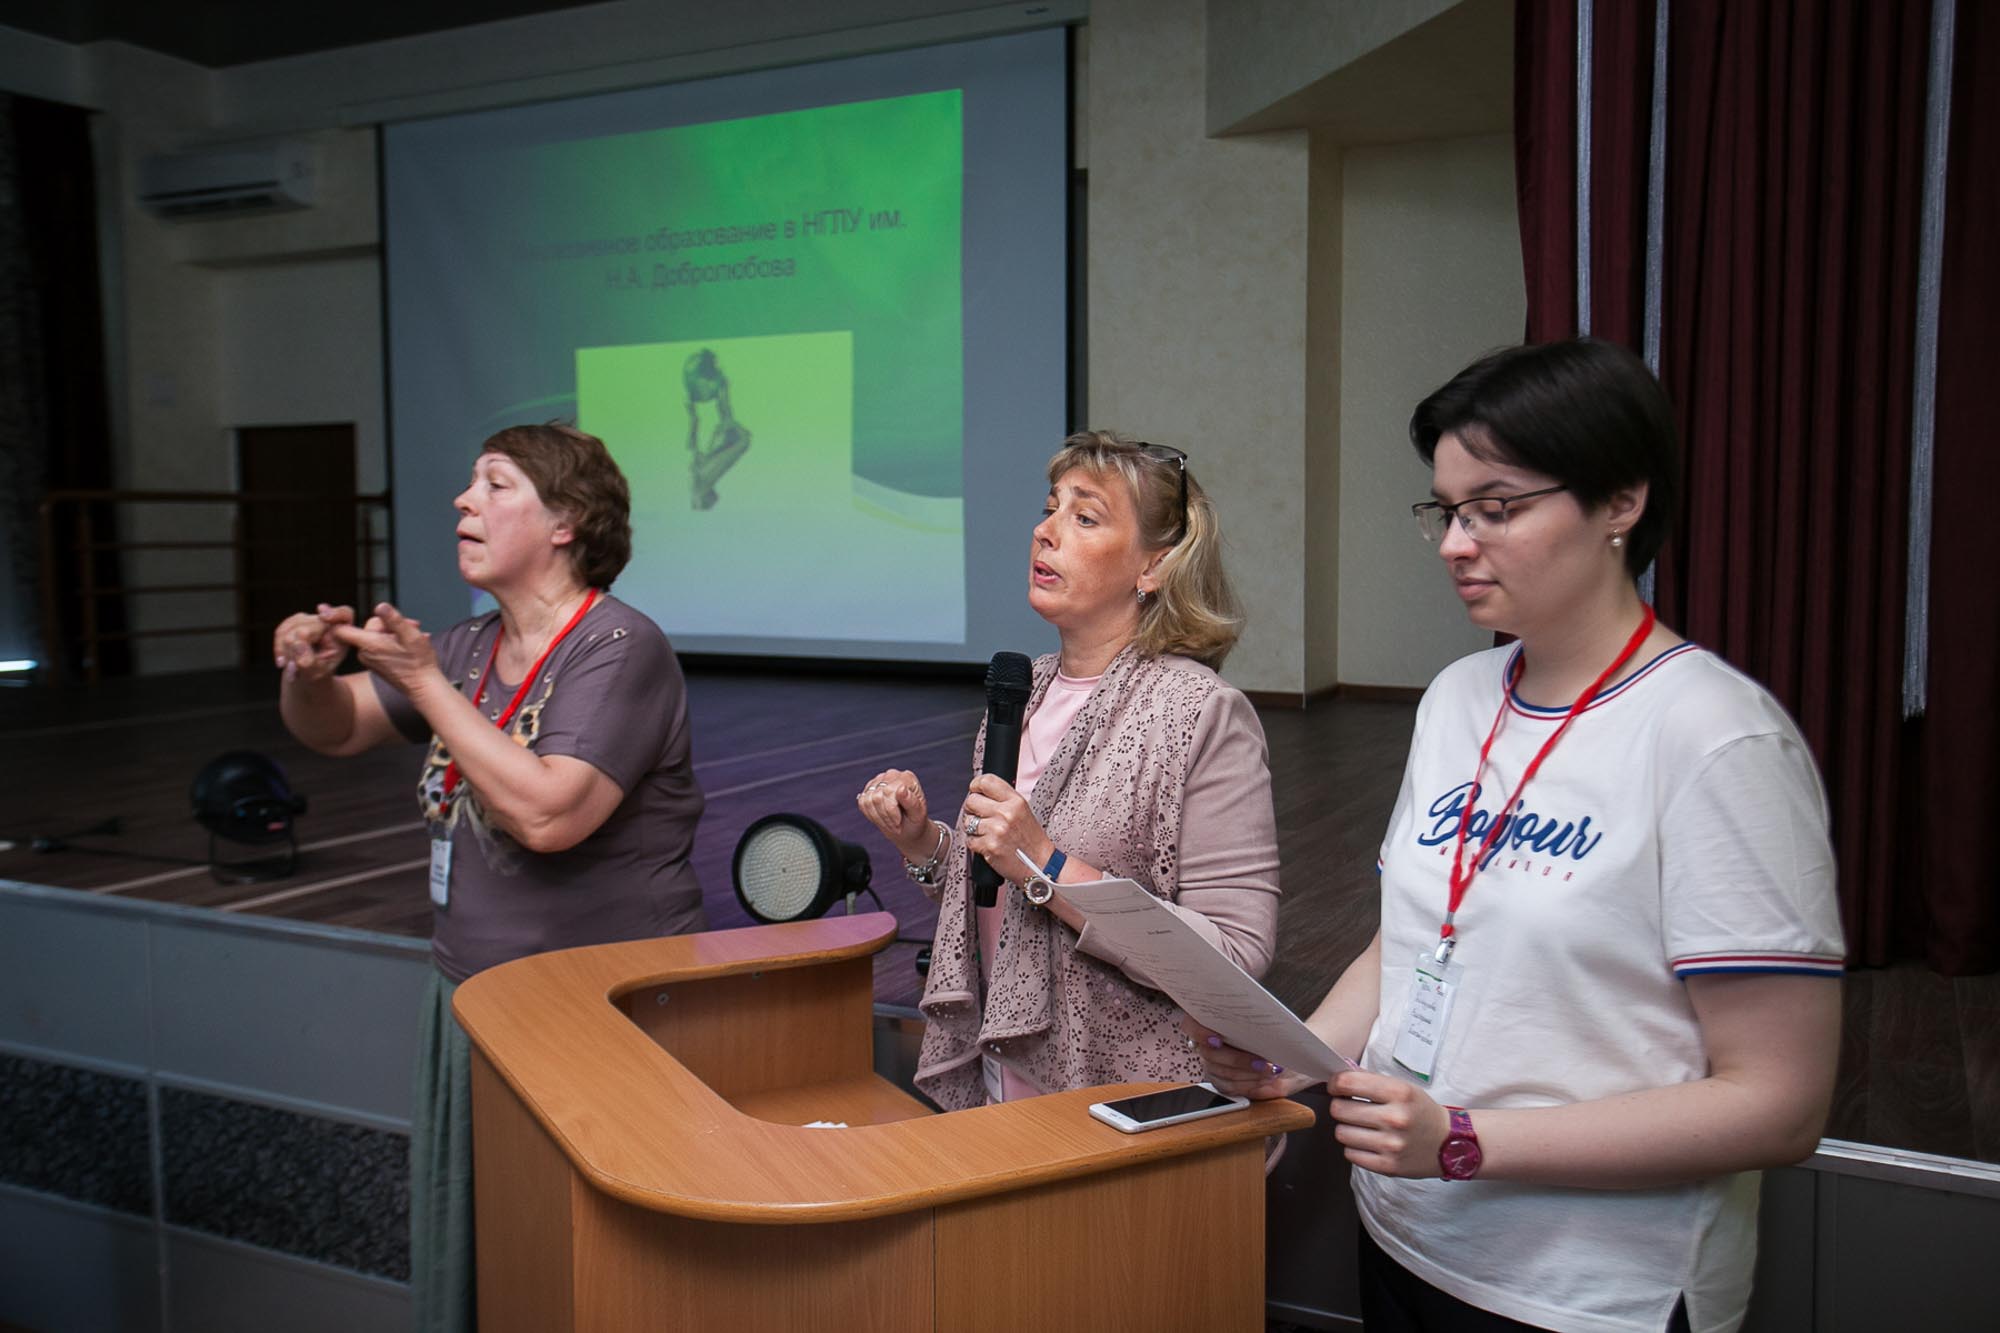 РУМЦ Мининского университета организовал профориентационное мероприятие для лиц с инвалидностью и ограниченными возможностями здоровья 